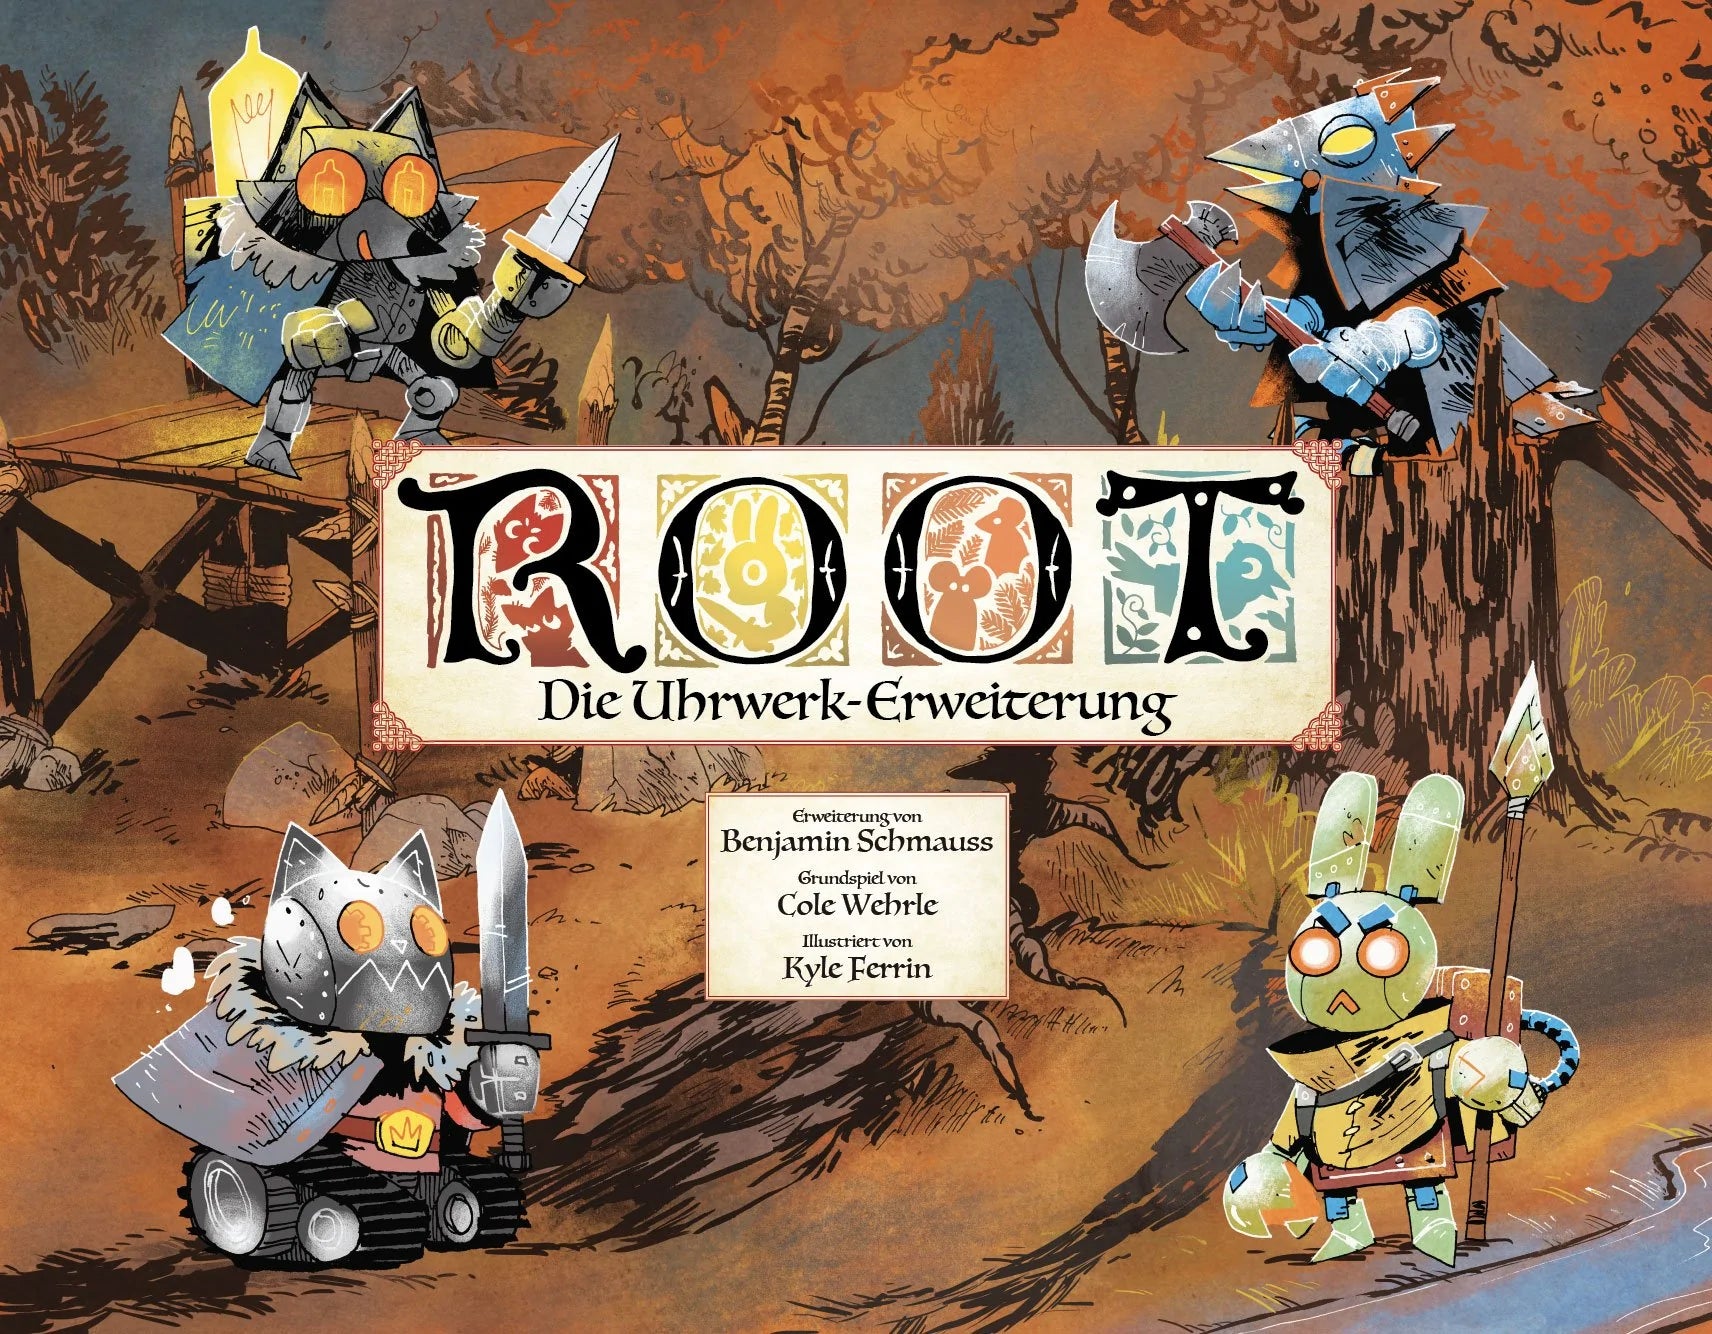 Root - Die Uhrwerk-Erweiterung